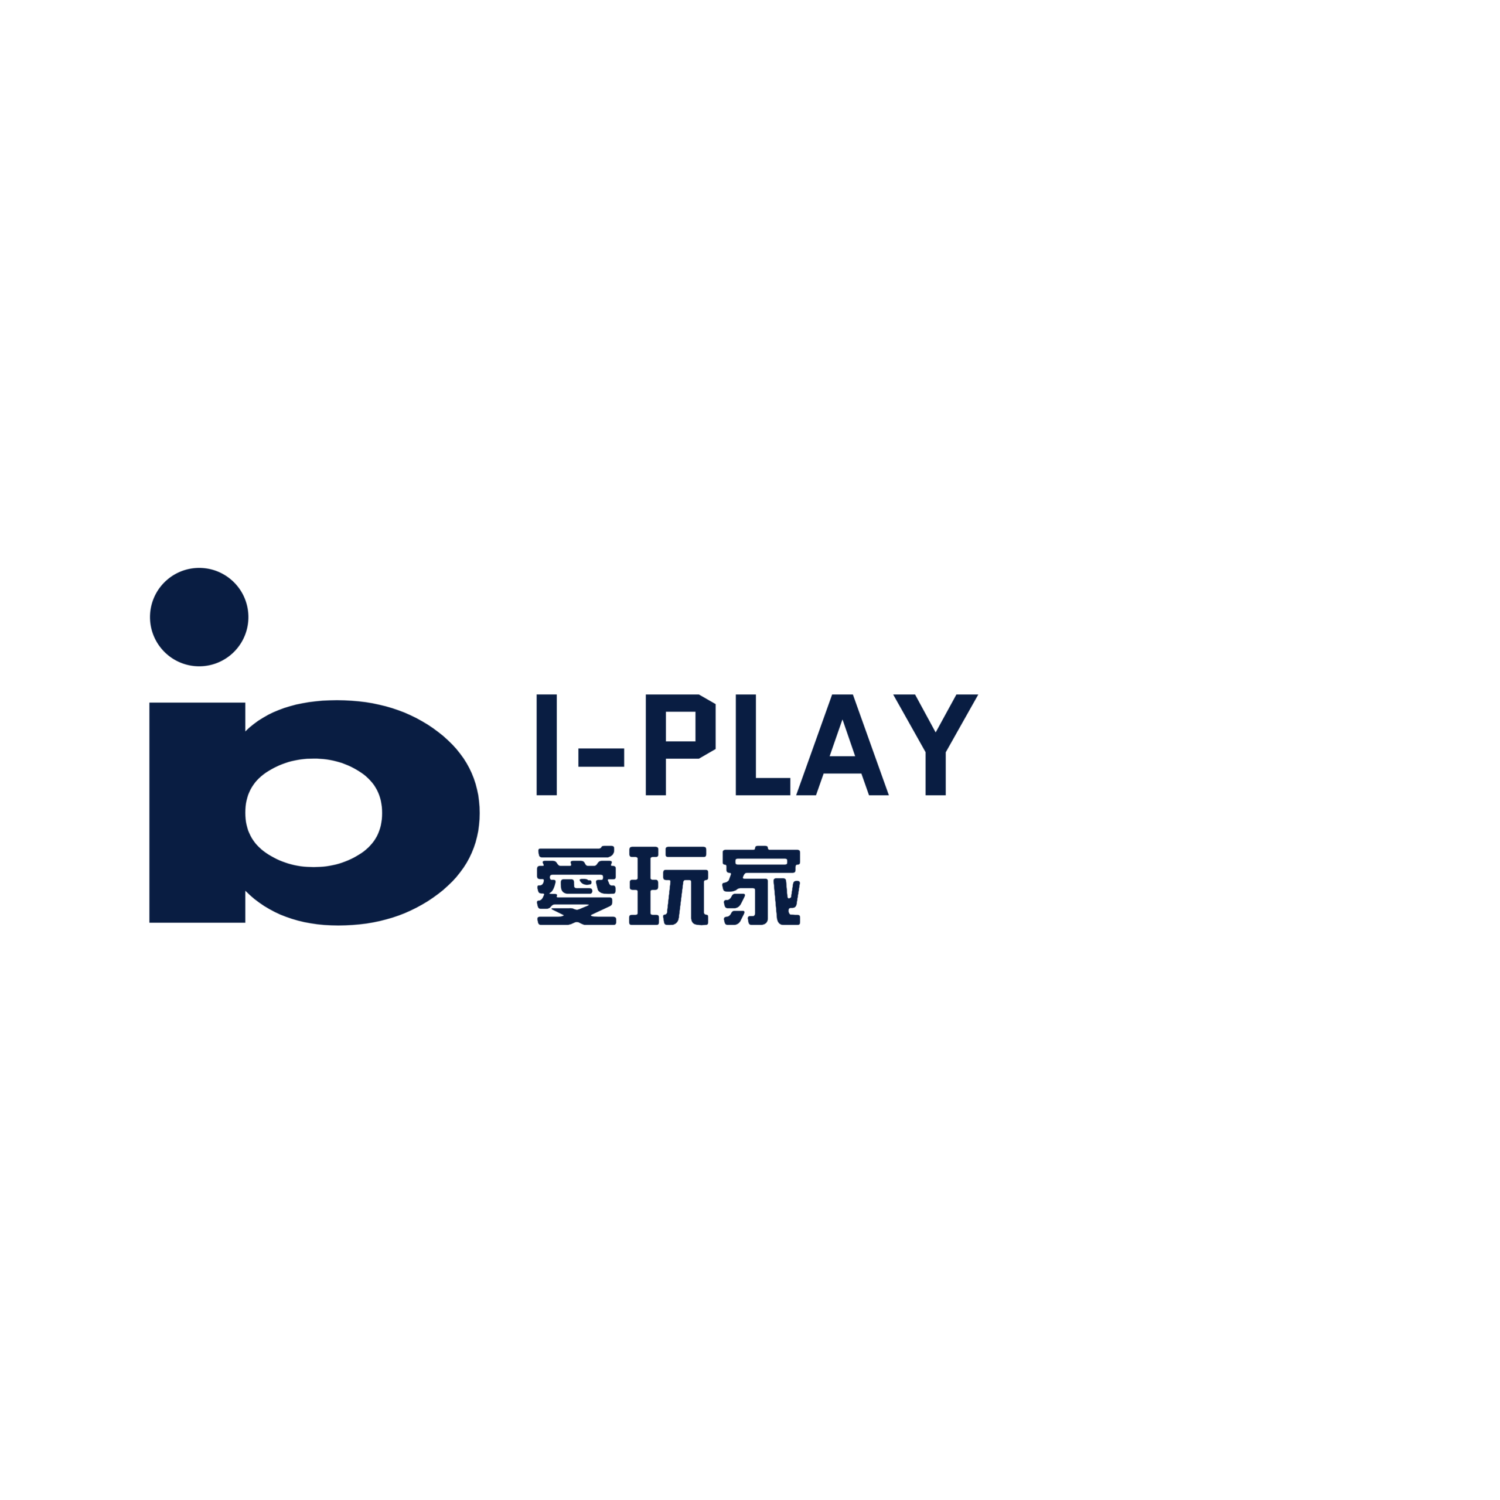 i-play logo